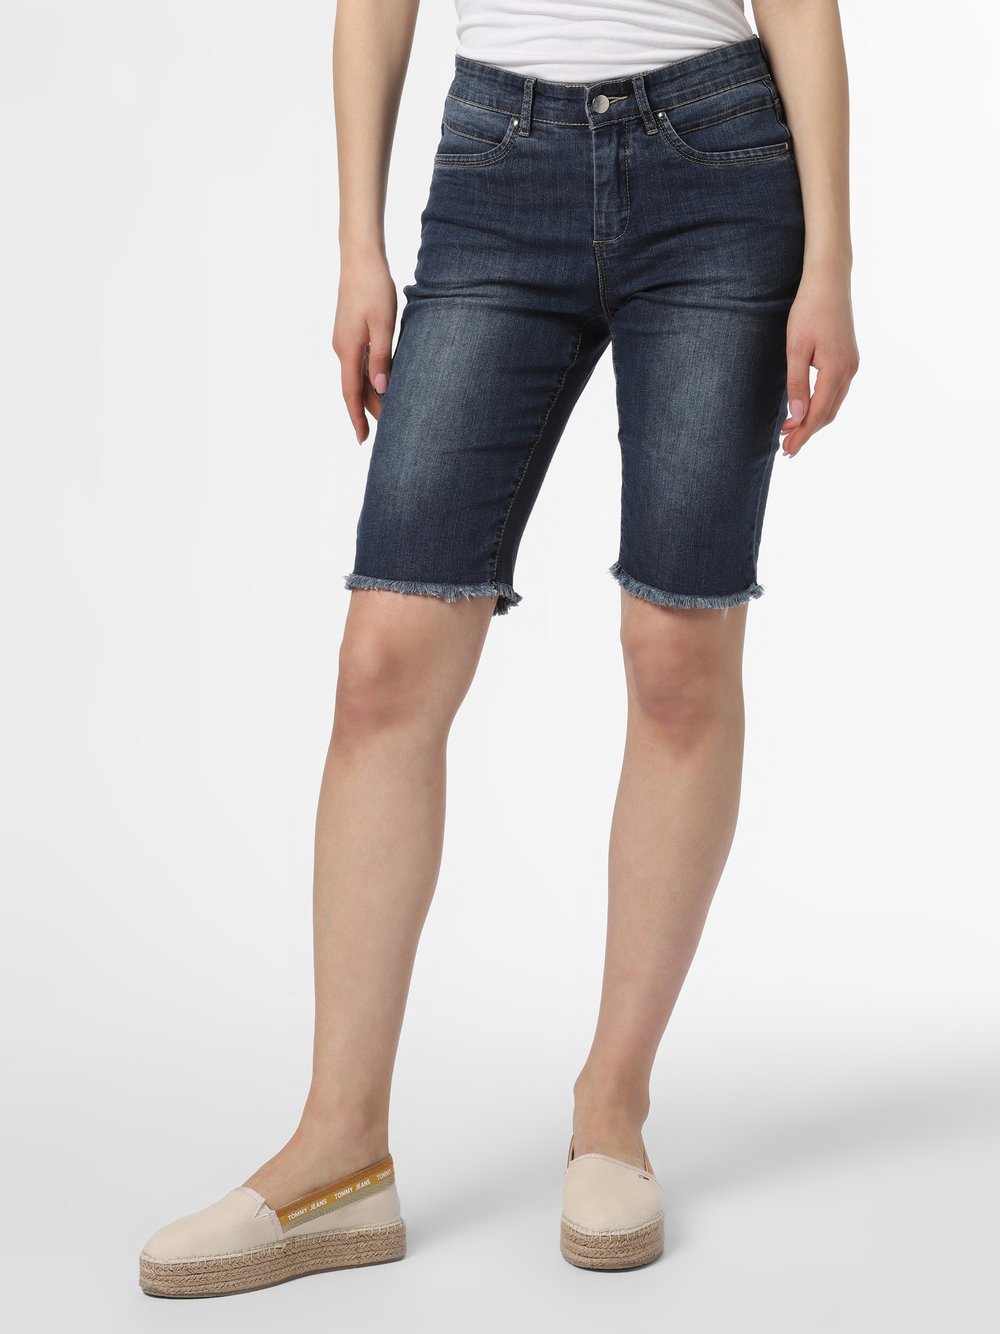 Olivia - Damskie krótkie spodenki jeansowe, niebieski